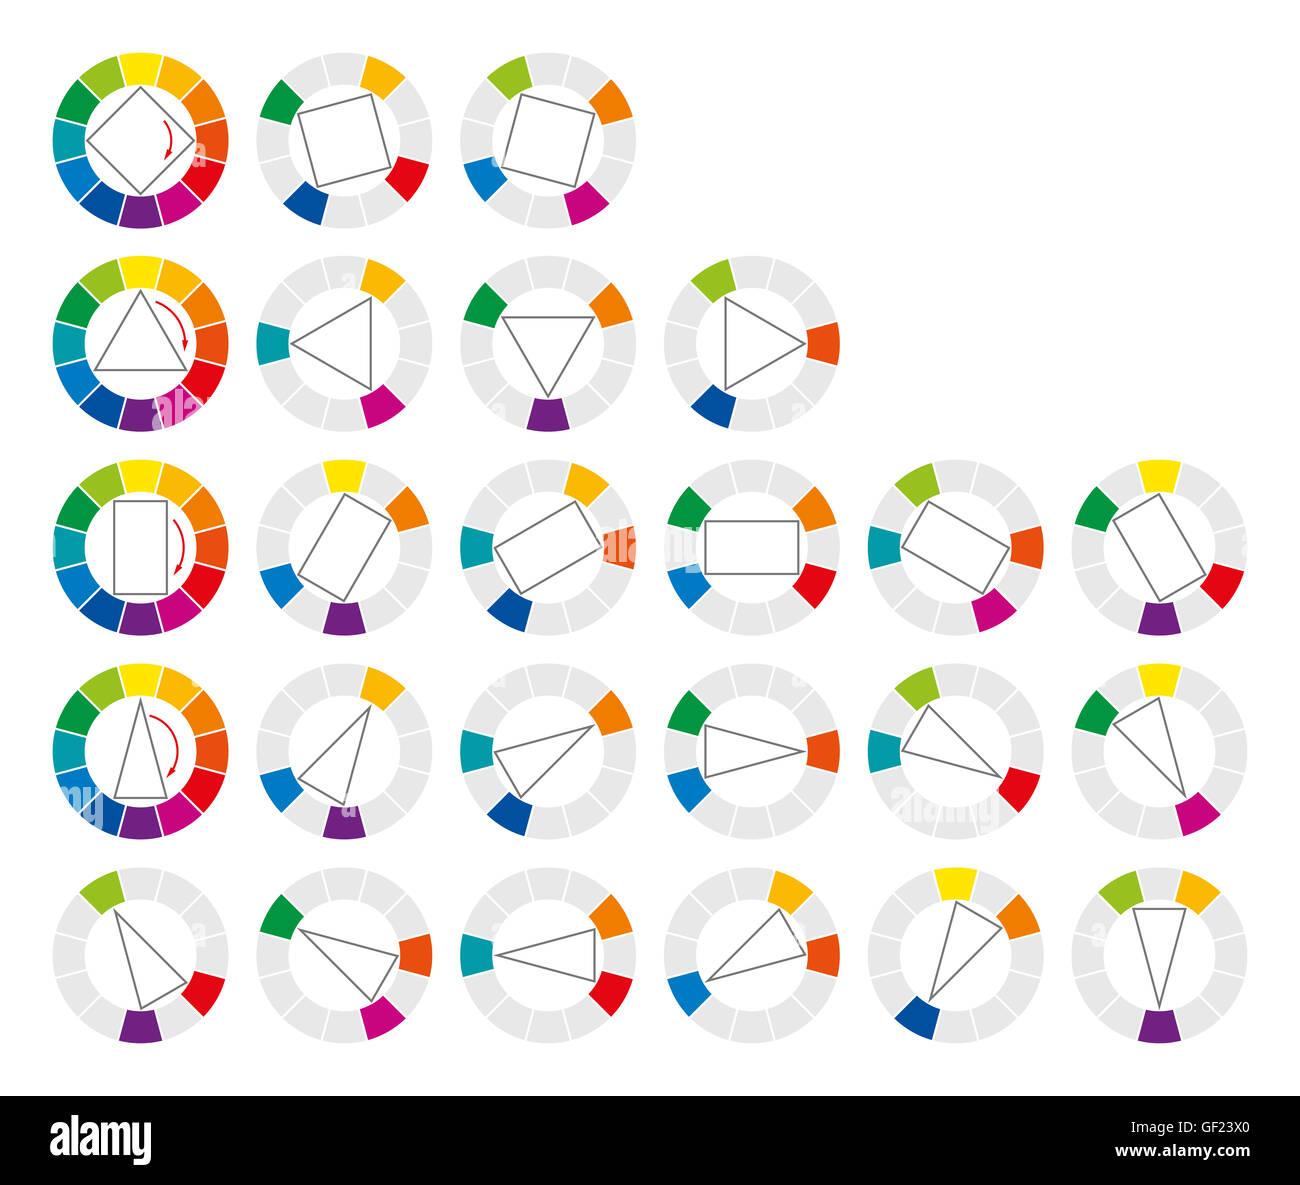 Rueda de colores y formas geométricas mostrando 20 posibles combinaciones armónicas y complementarias de los colores en el art. Foto de stock